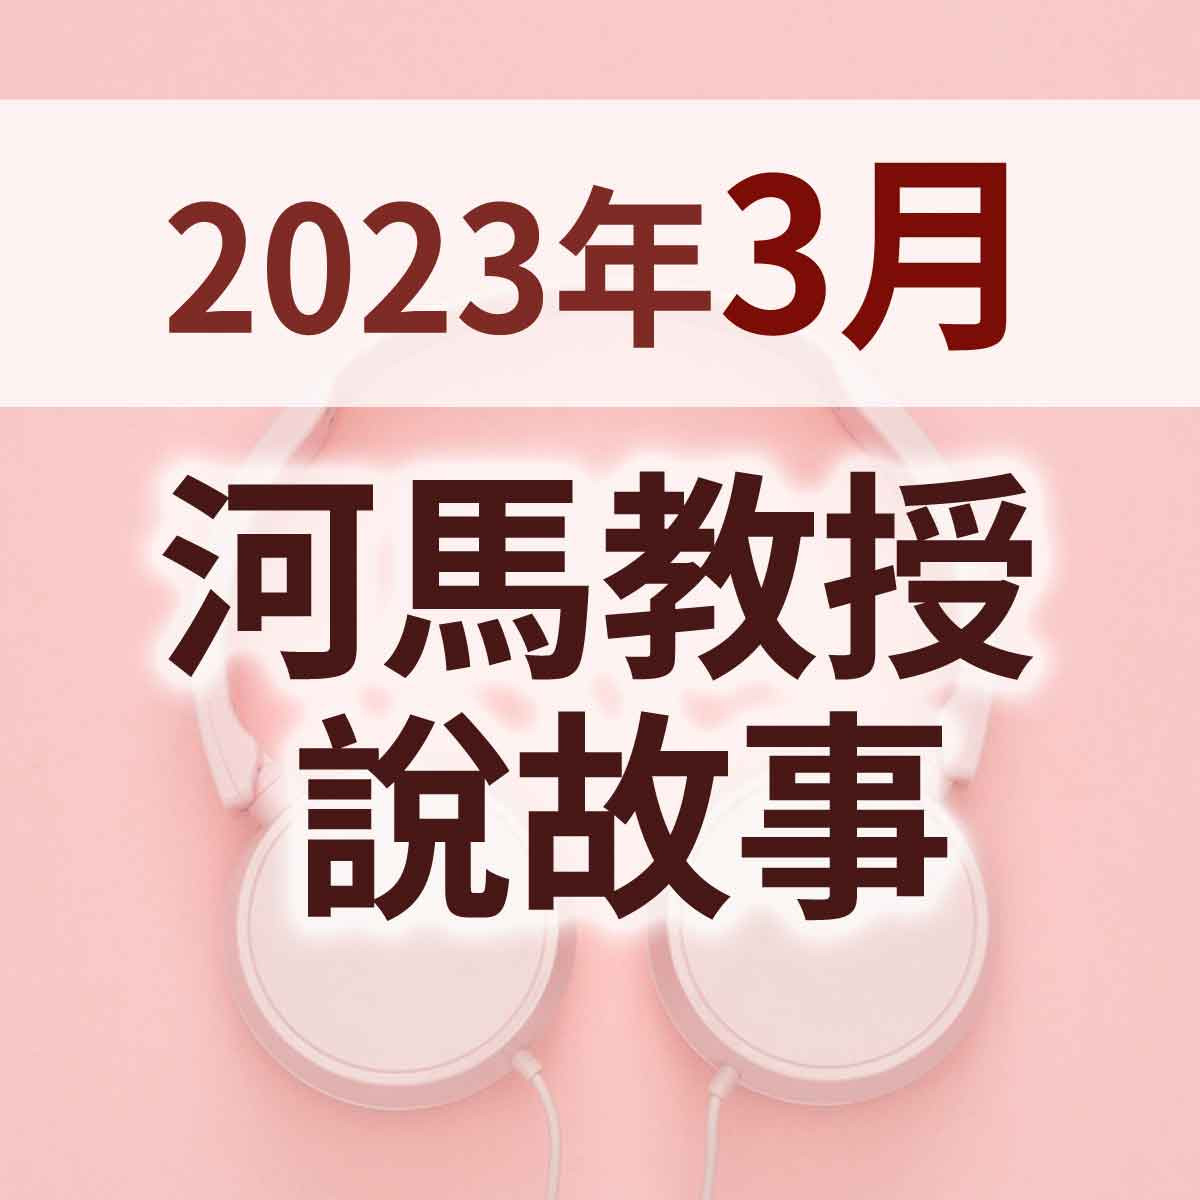 2023年3月 - 河馬教授說故事首播精選封面圖